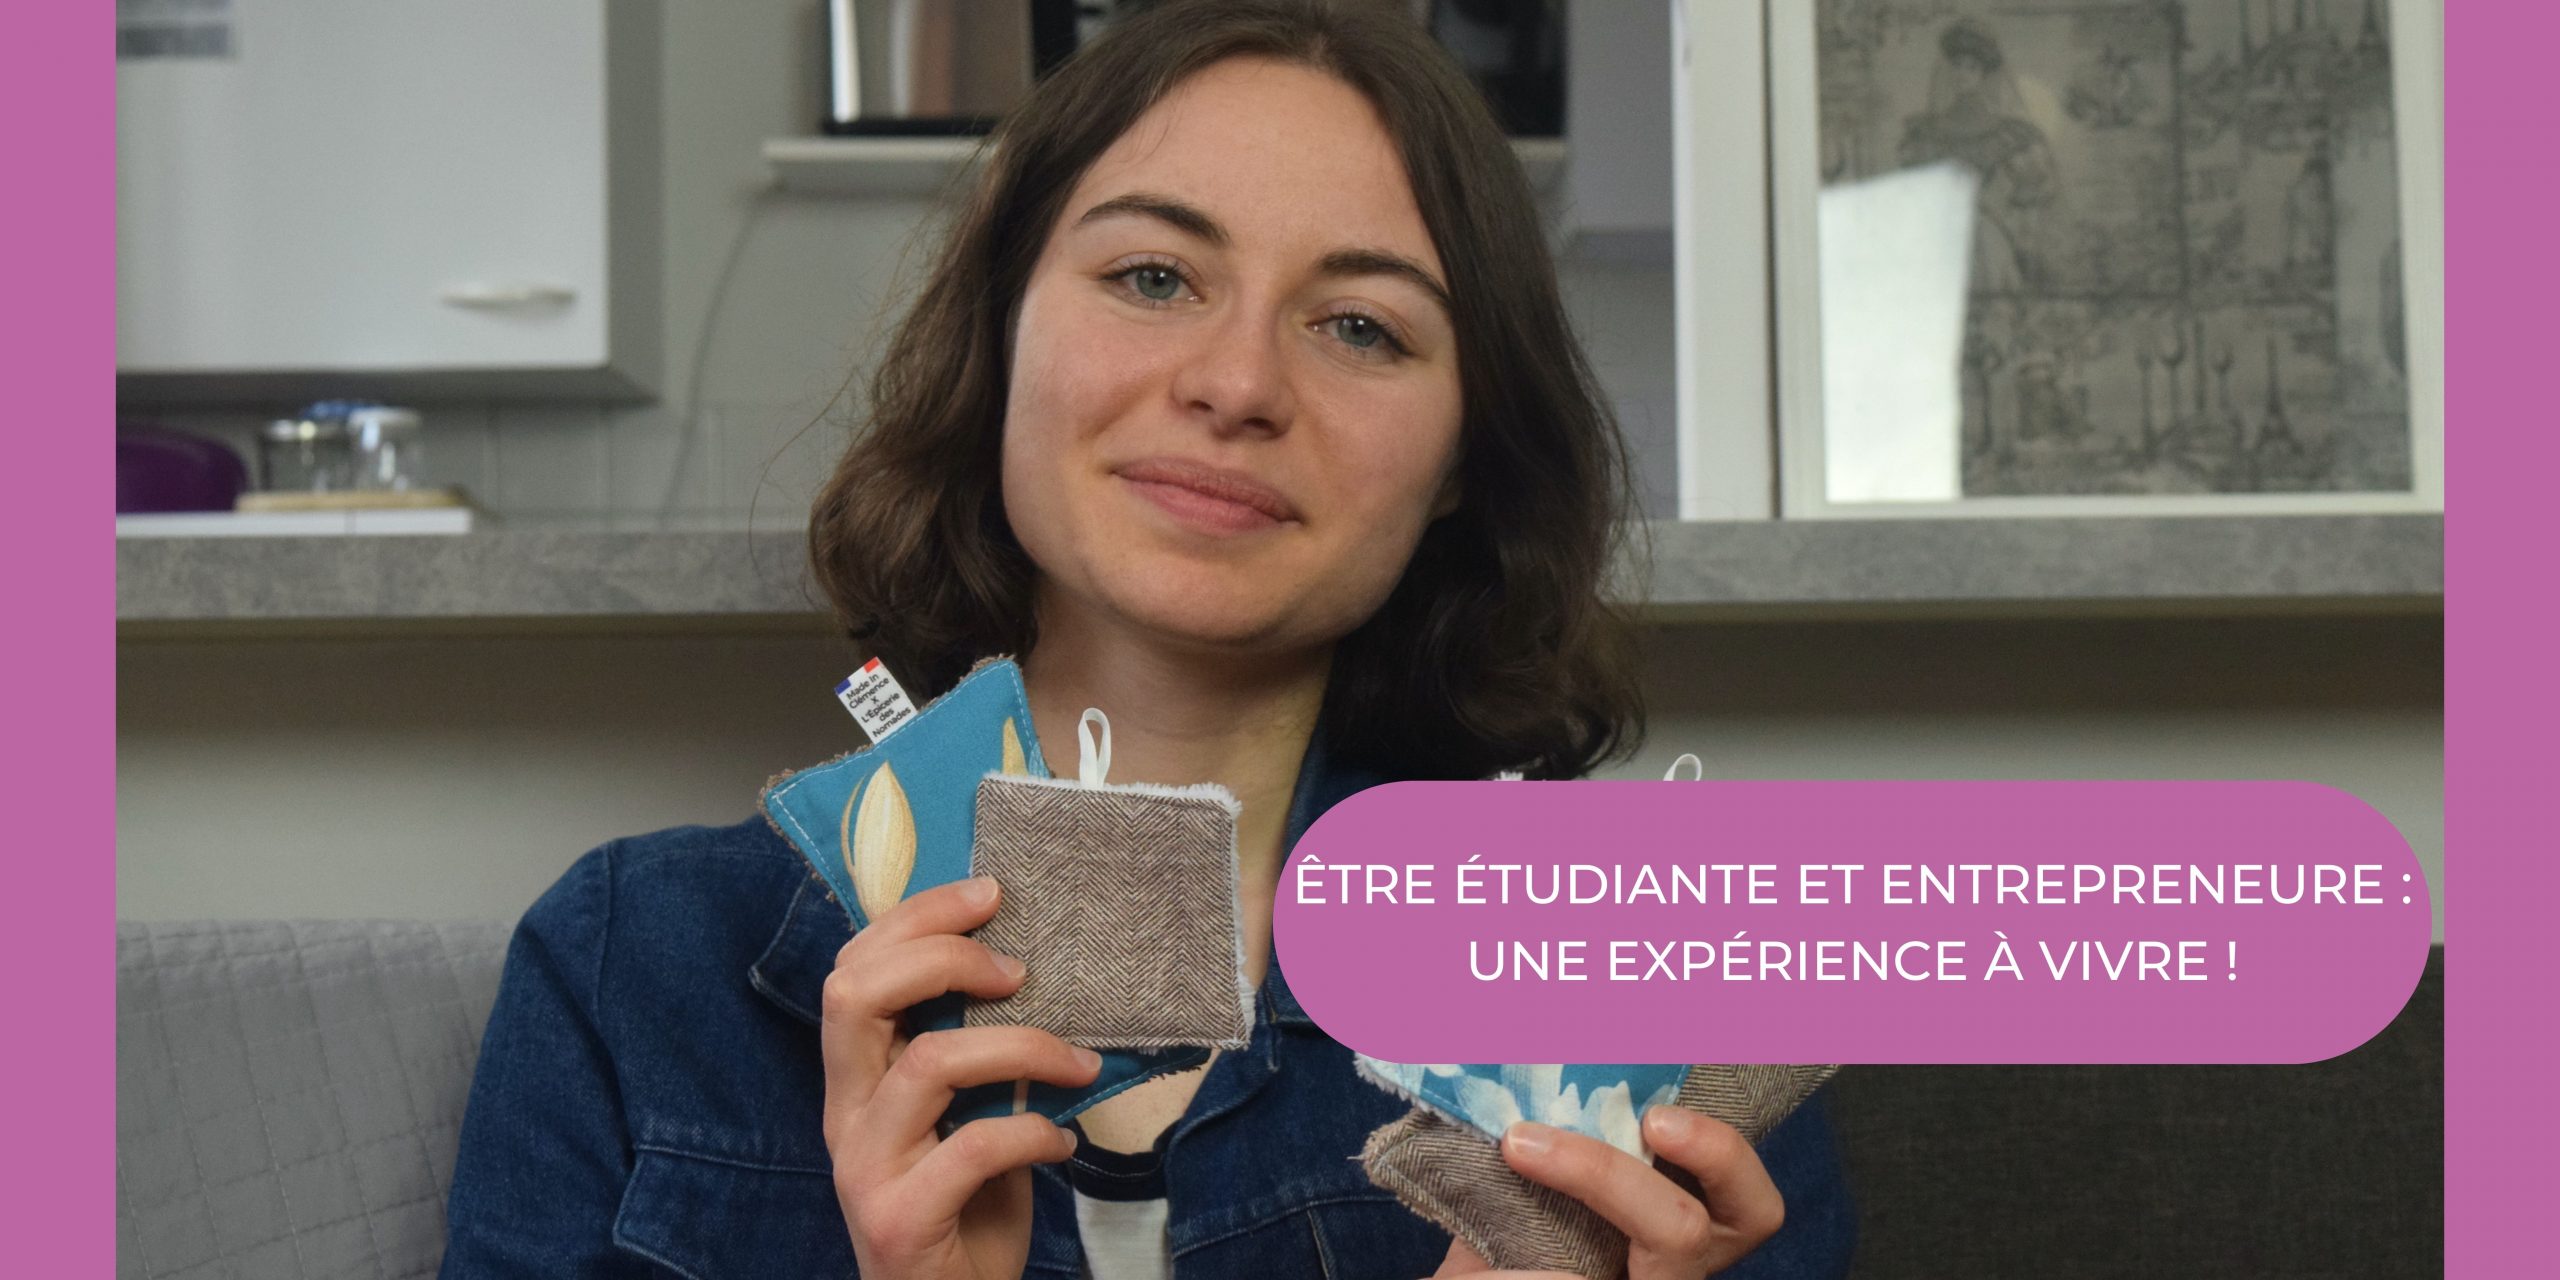 You are currently viewing Être étudiante et entrepreneure : une expérience à vivre !